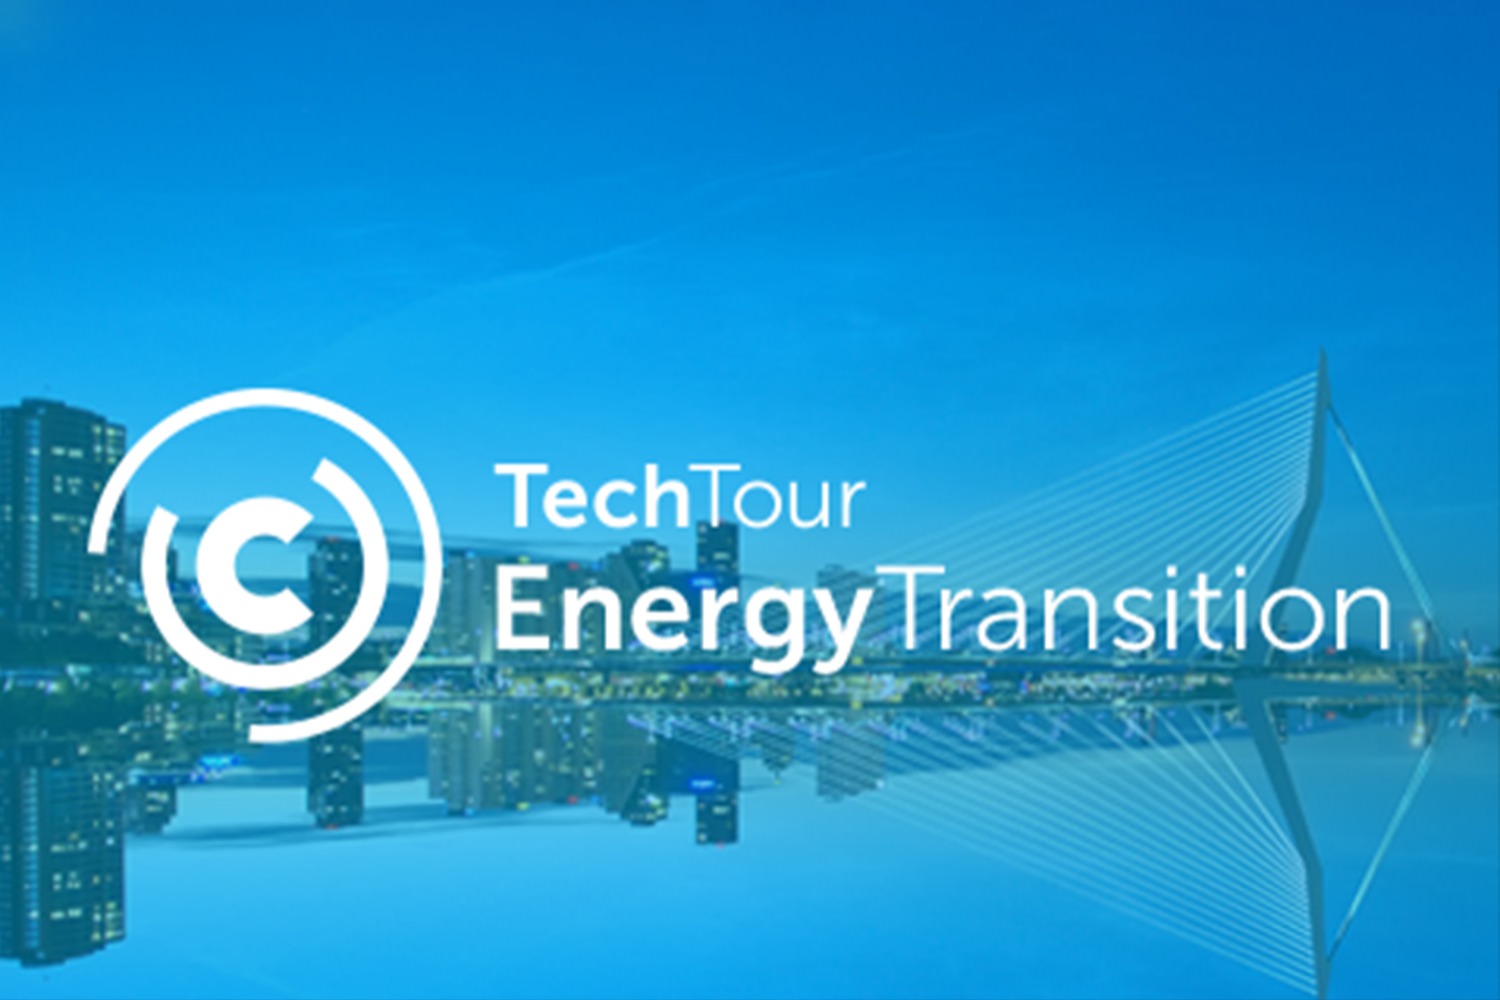 Tech Tour Energy Transition 2019